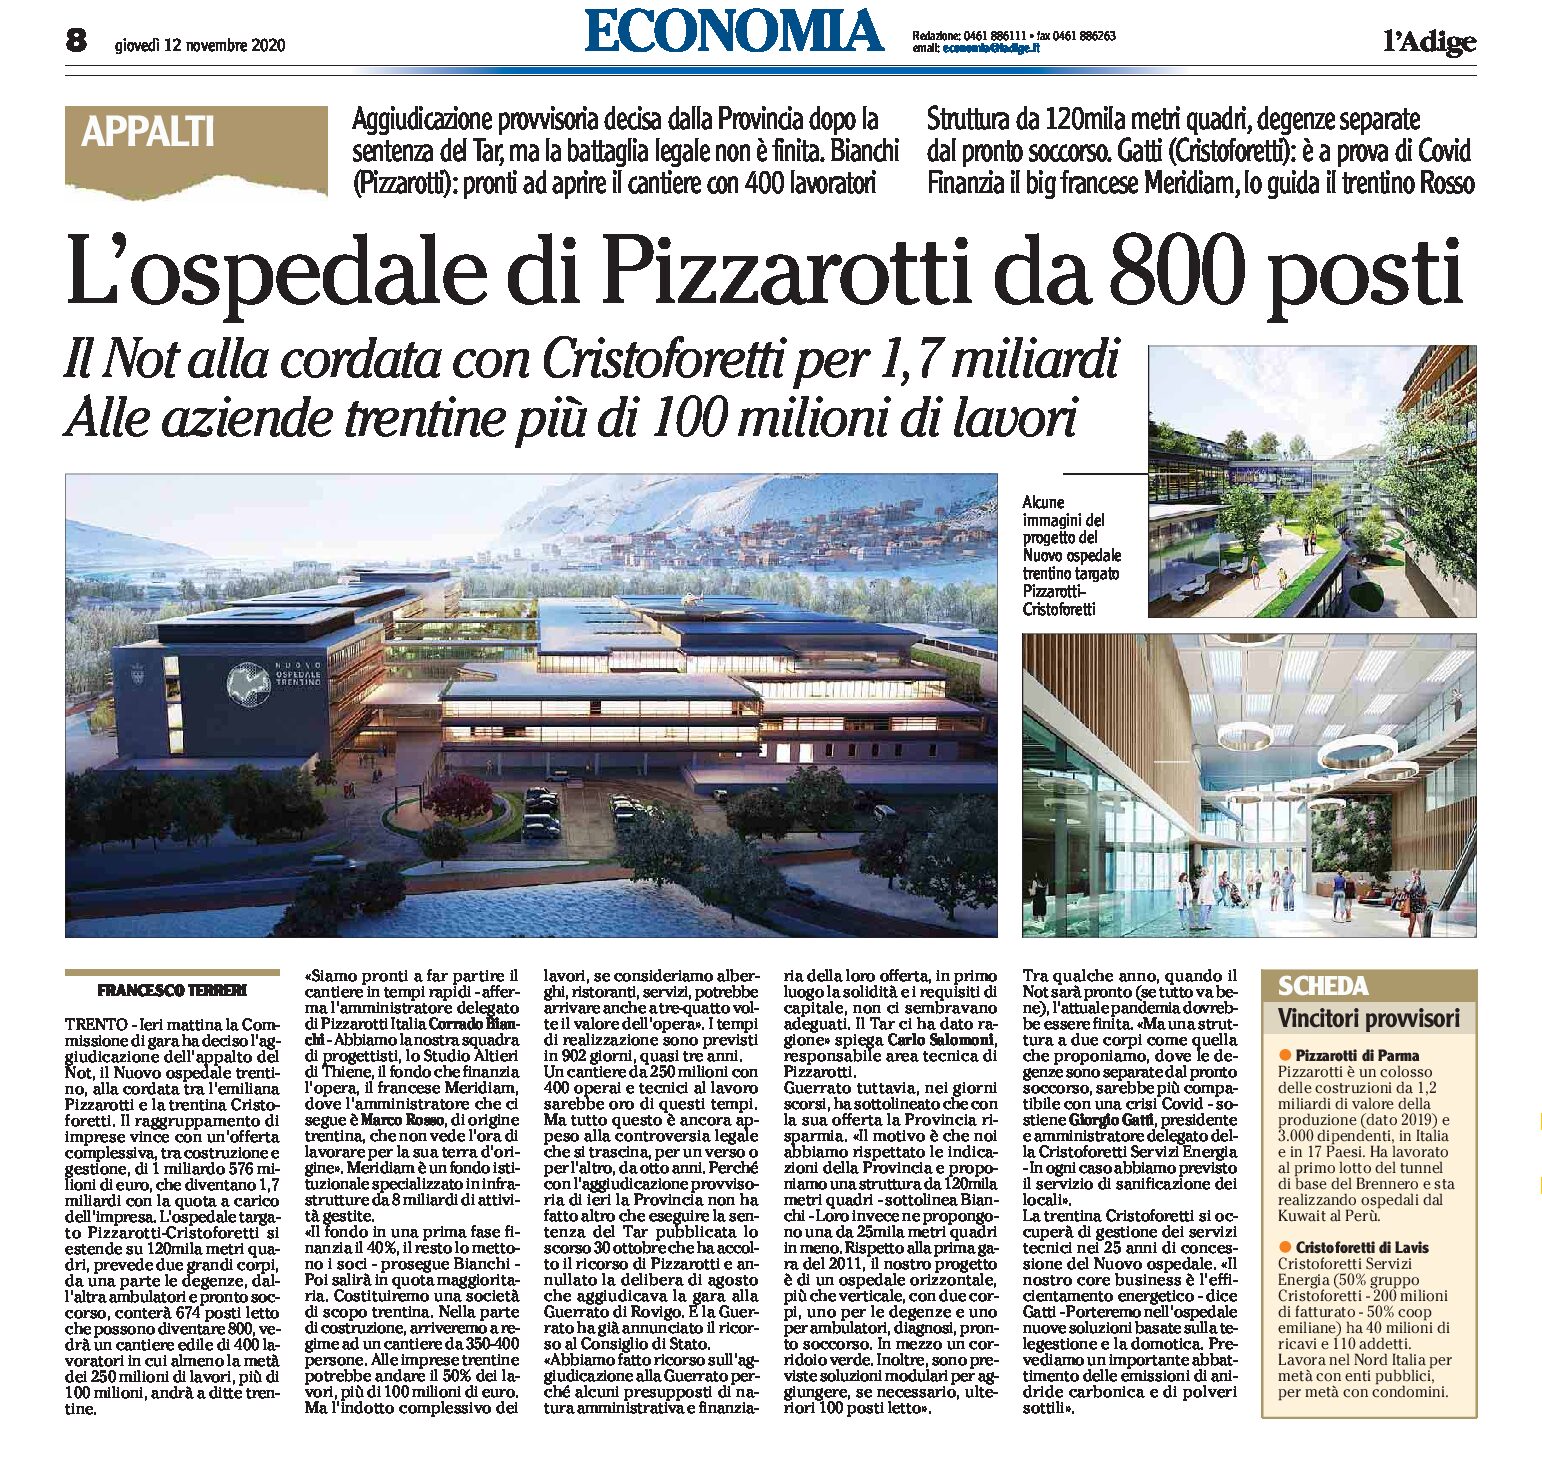 Trento, Not: vince l’ospedale di Pizzarotti-Cristoforetti da 800 posti